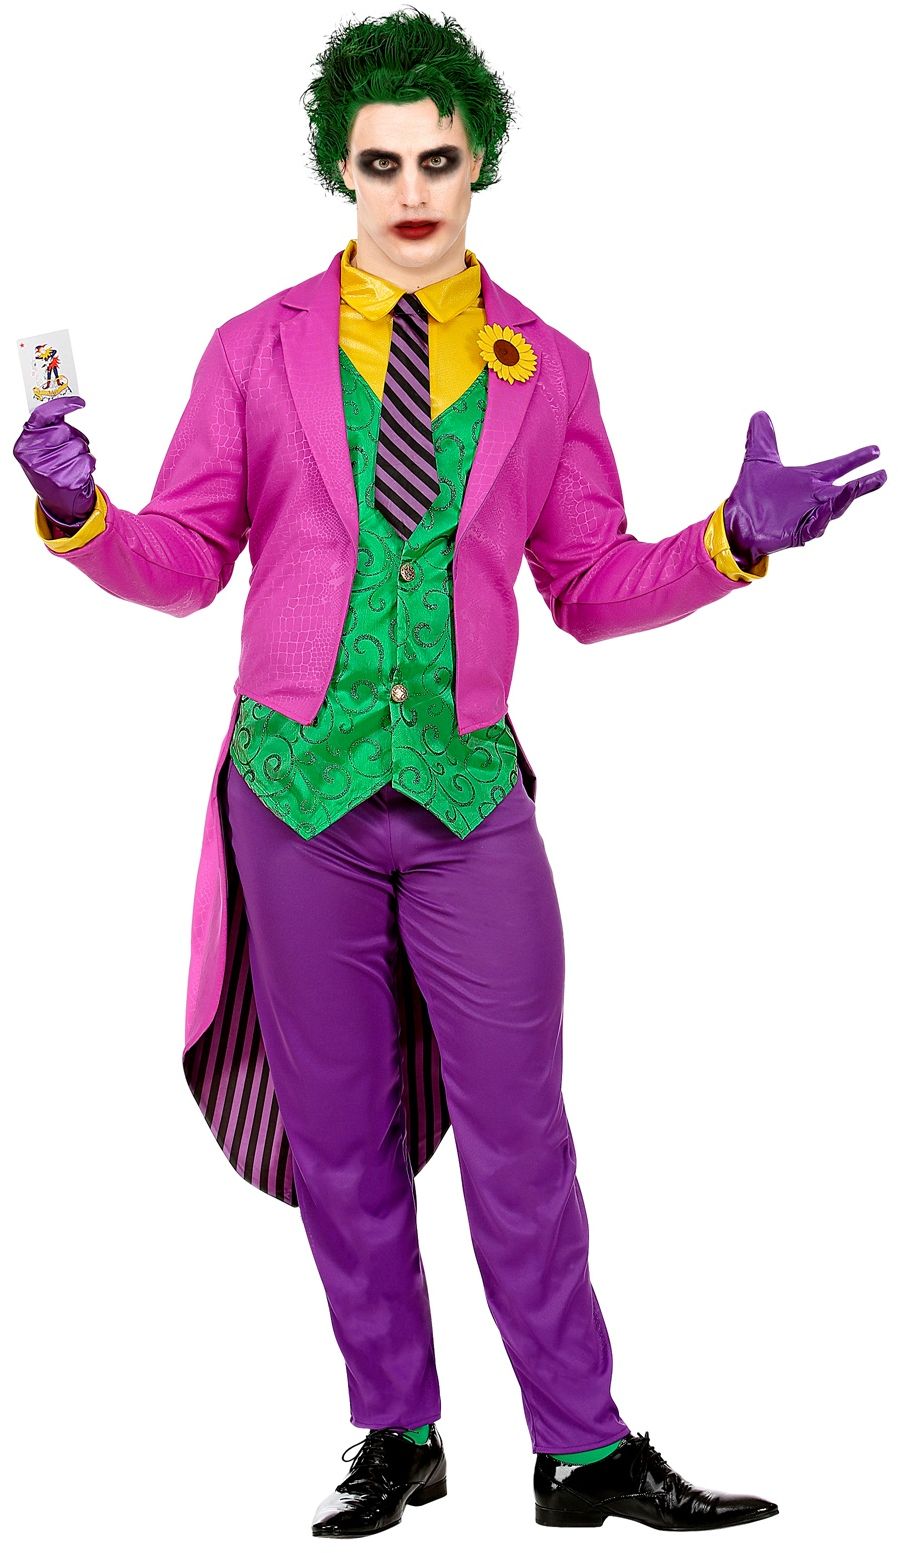 The joker kostuum batman